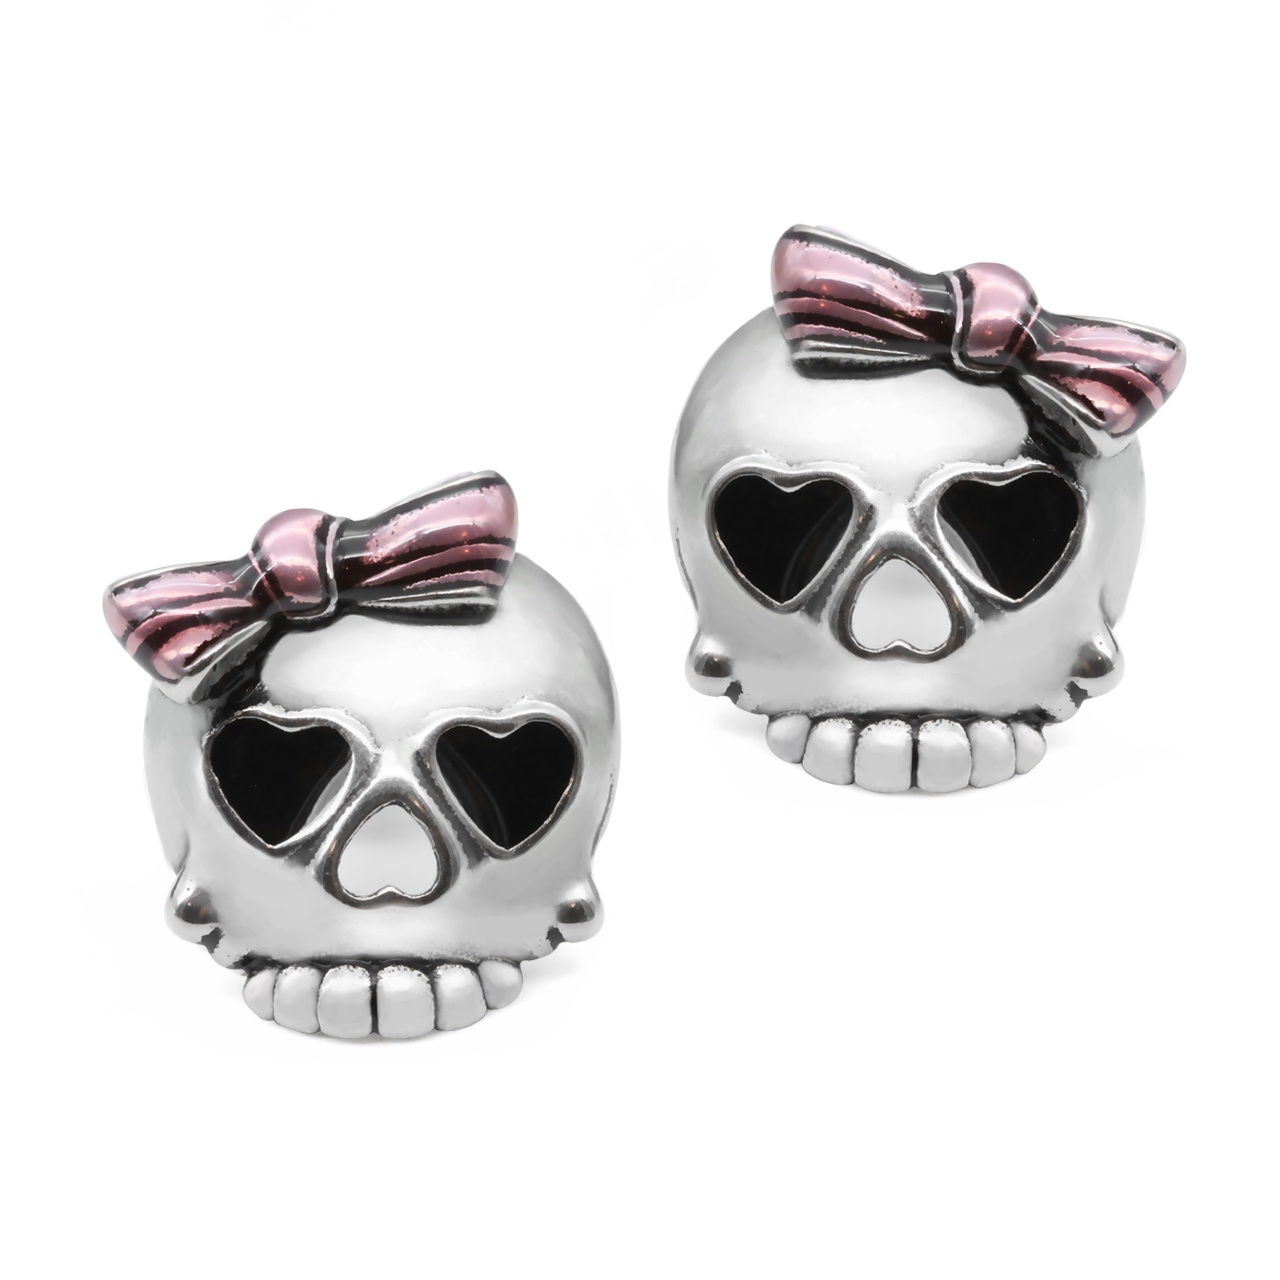 Bejeweled Badass in Pink Skull Earrings